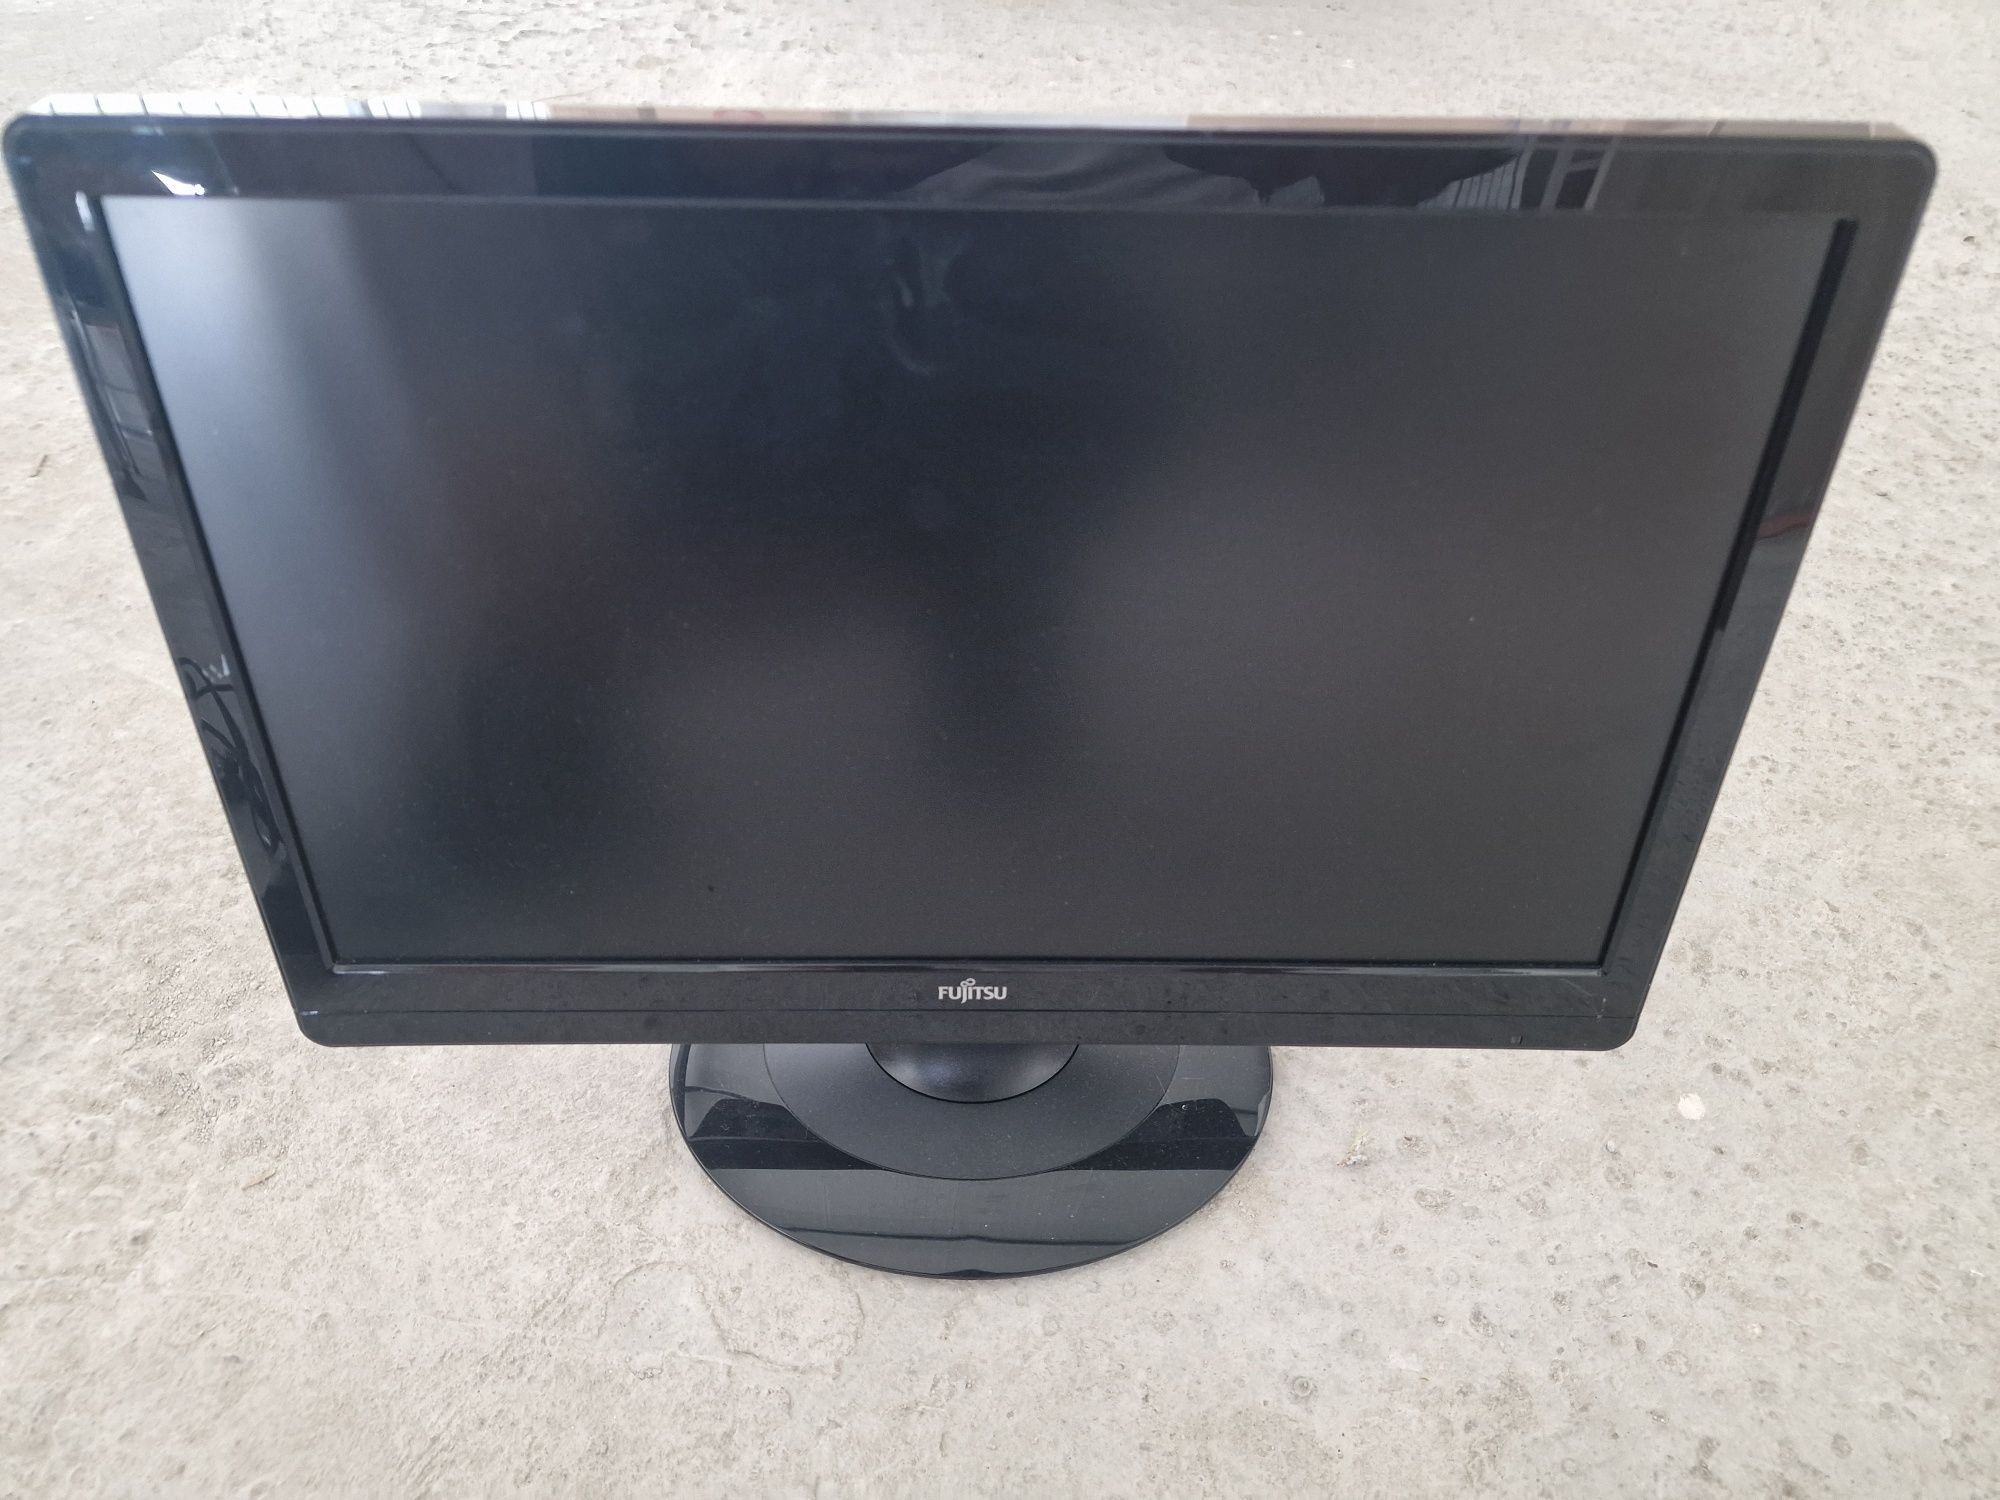 Ecrã Monitor para computador Fujitsu (diagonal 47cm|18.5 polegadas)